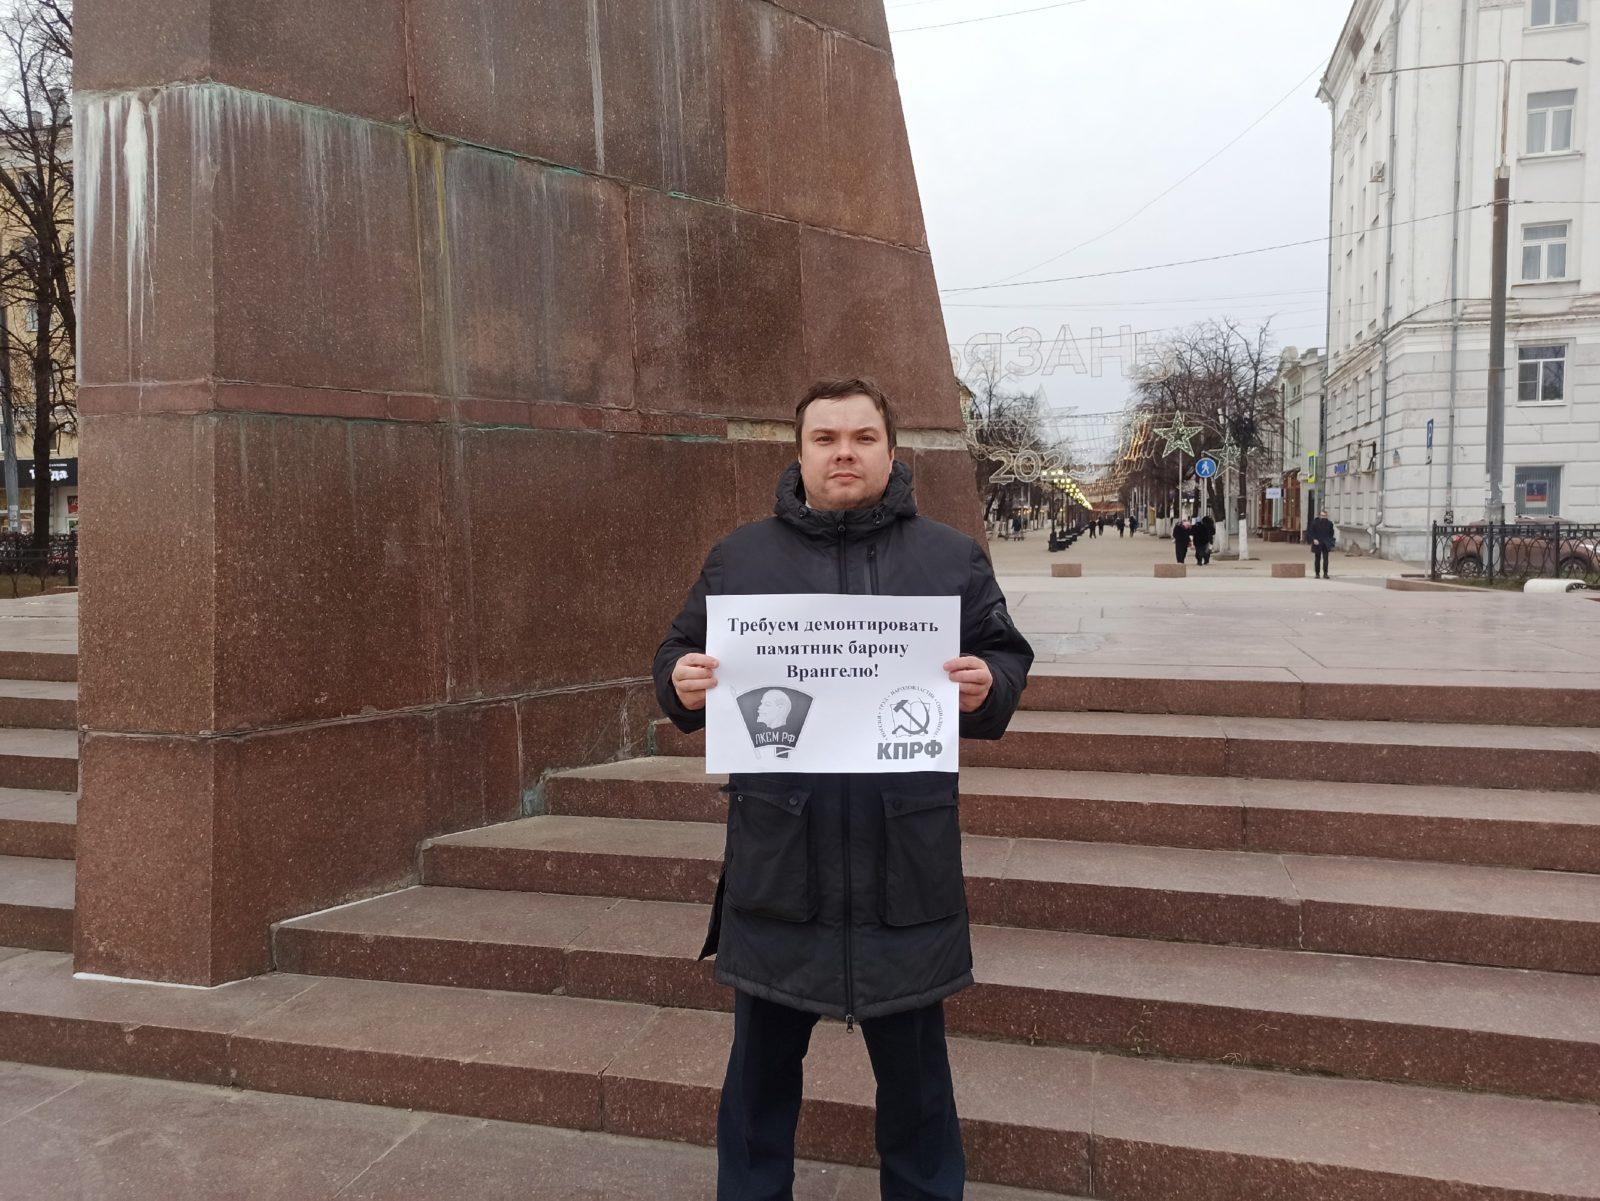 Рязанские комсомольцы провели акцию протеста с требованием демонтировать памятник предателю Врангелю